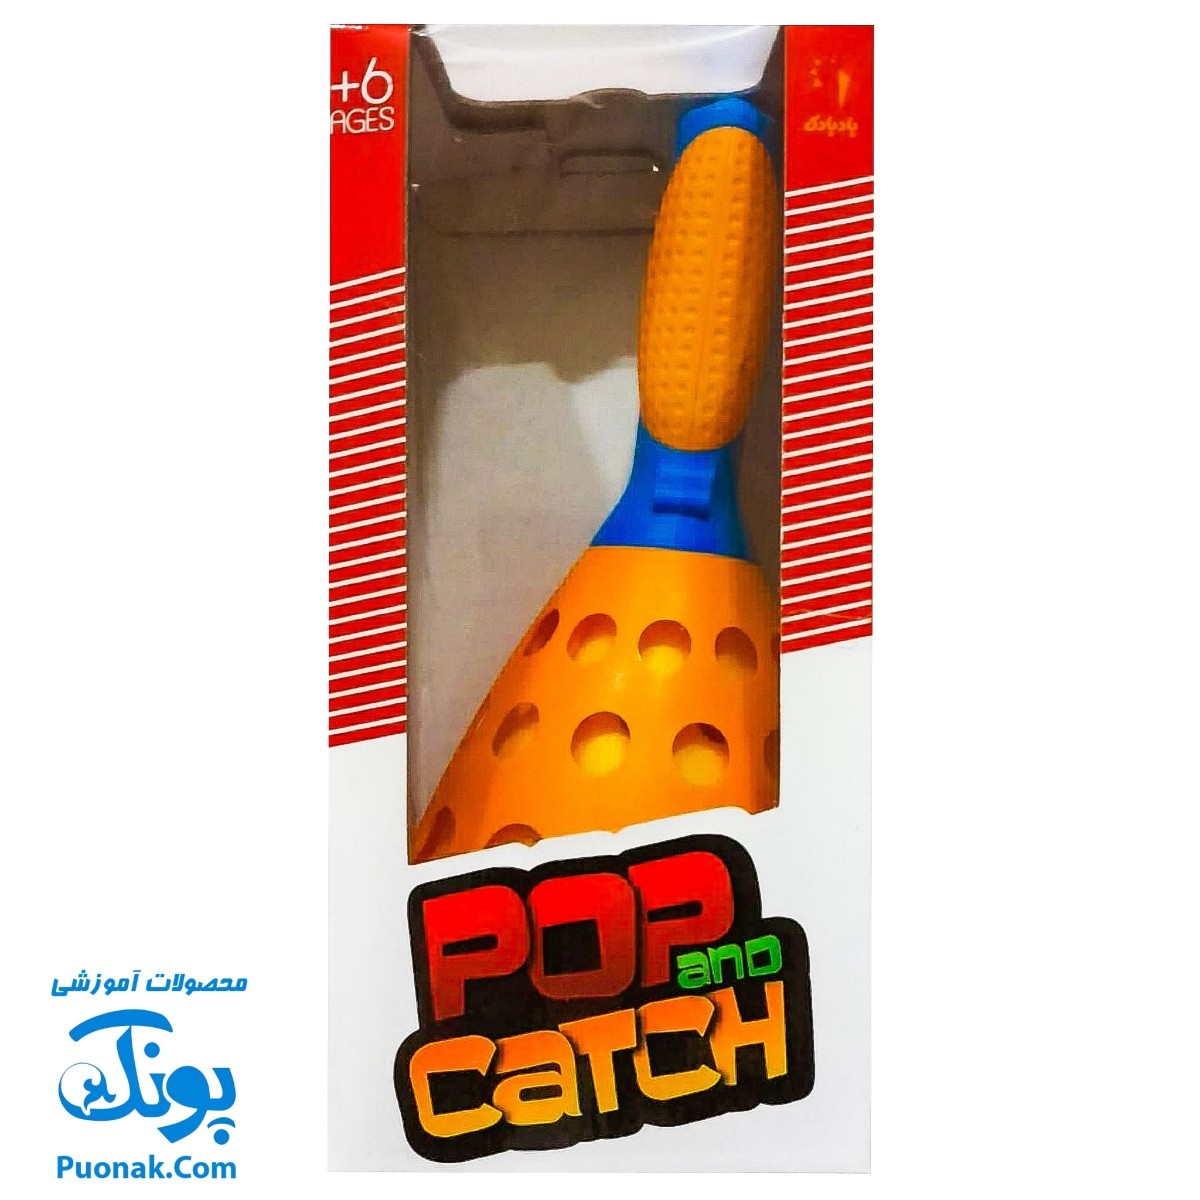 بازی شوتبال جعبه ای (دو عدد شوت بال به همراه توپ) Pop and Catch